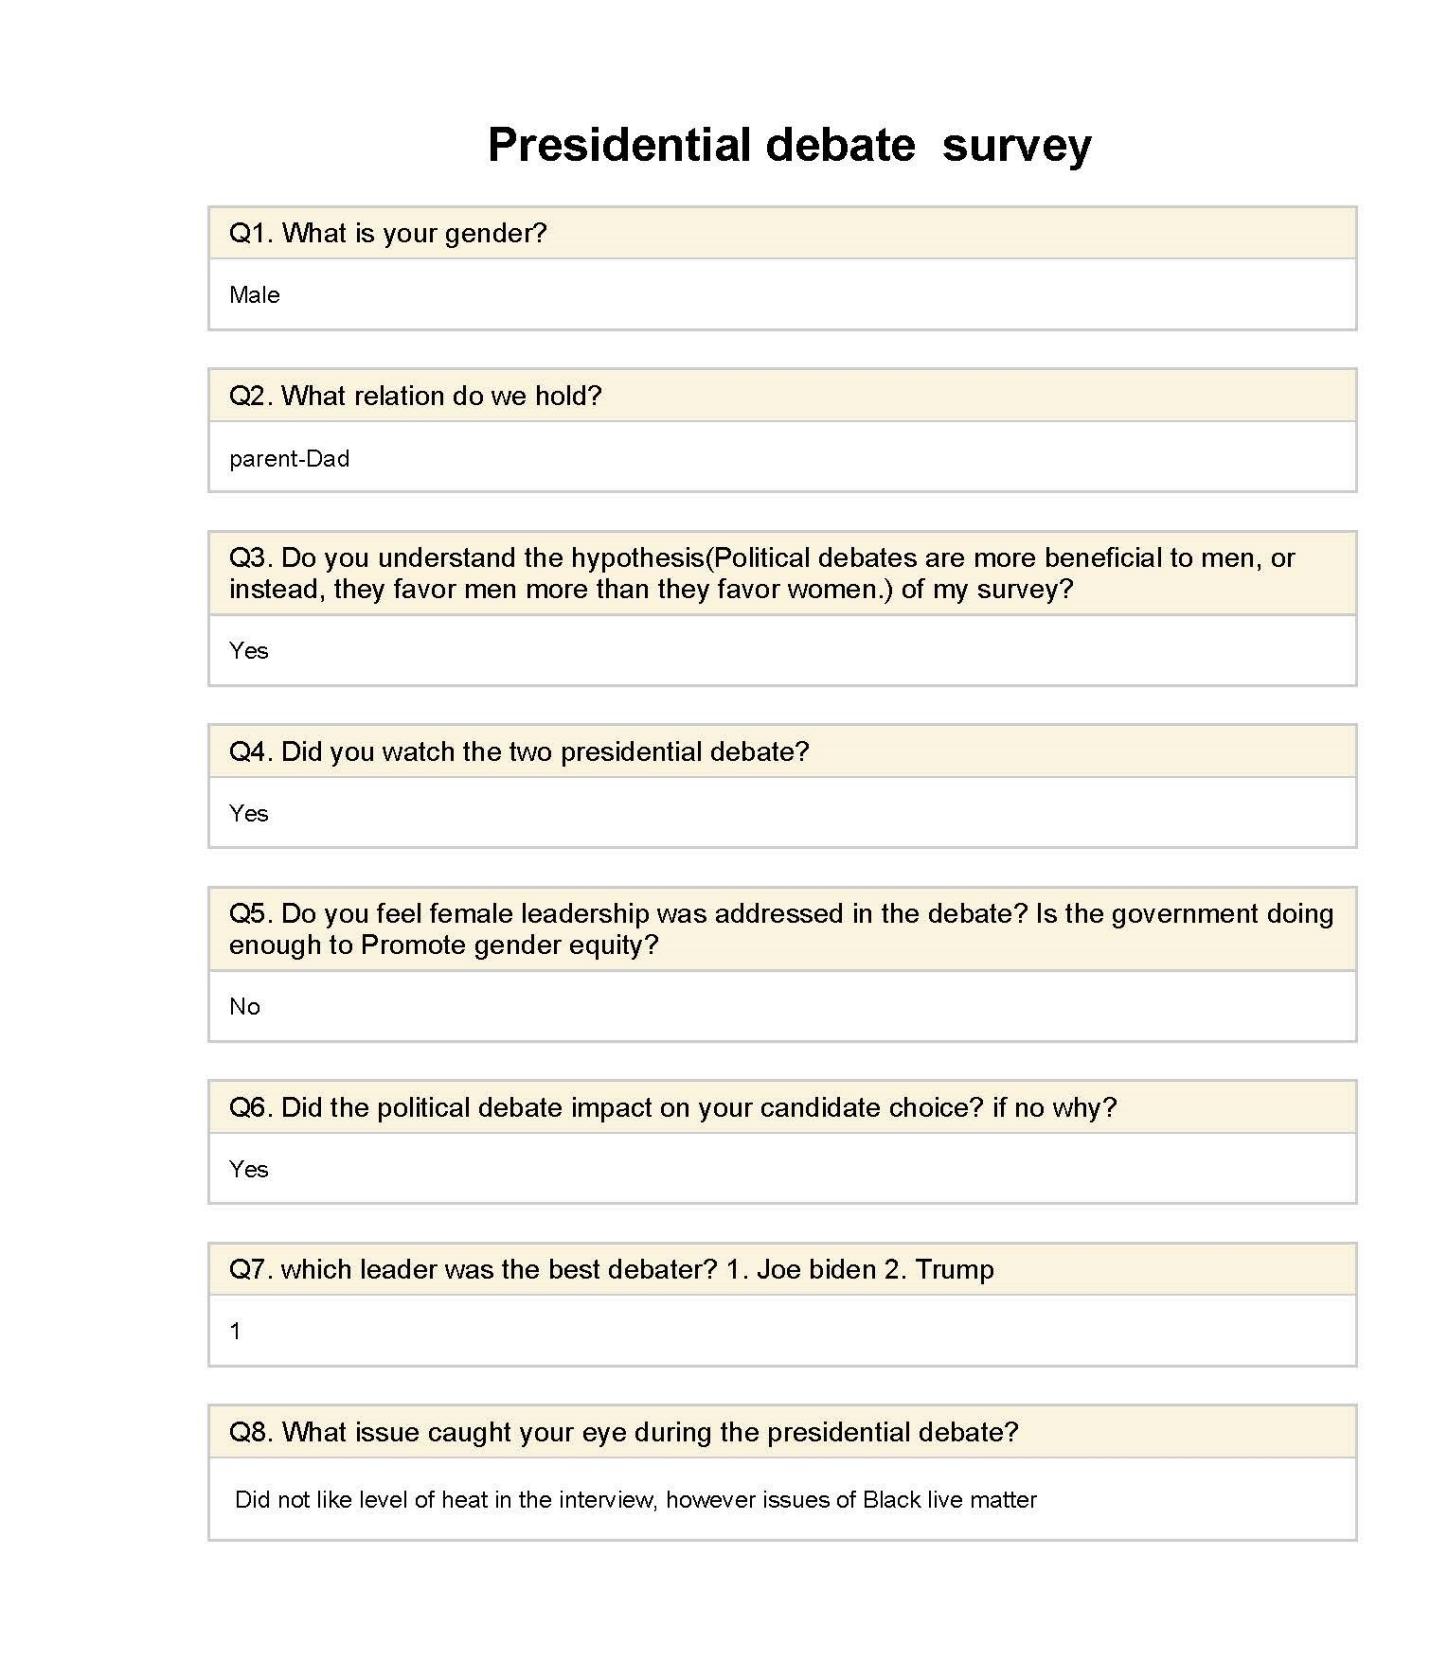 Presidential debate survey